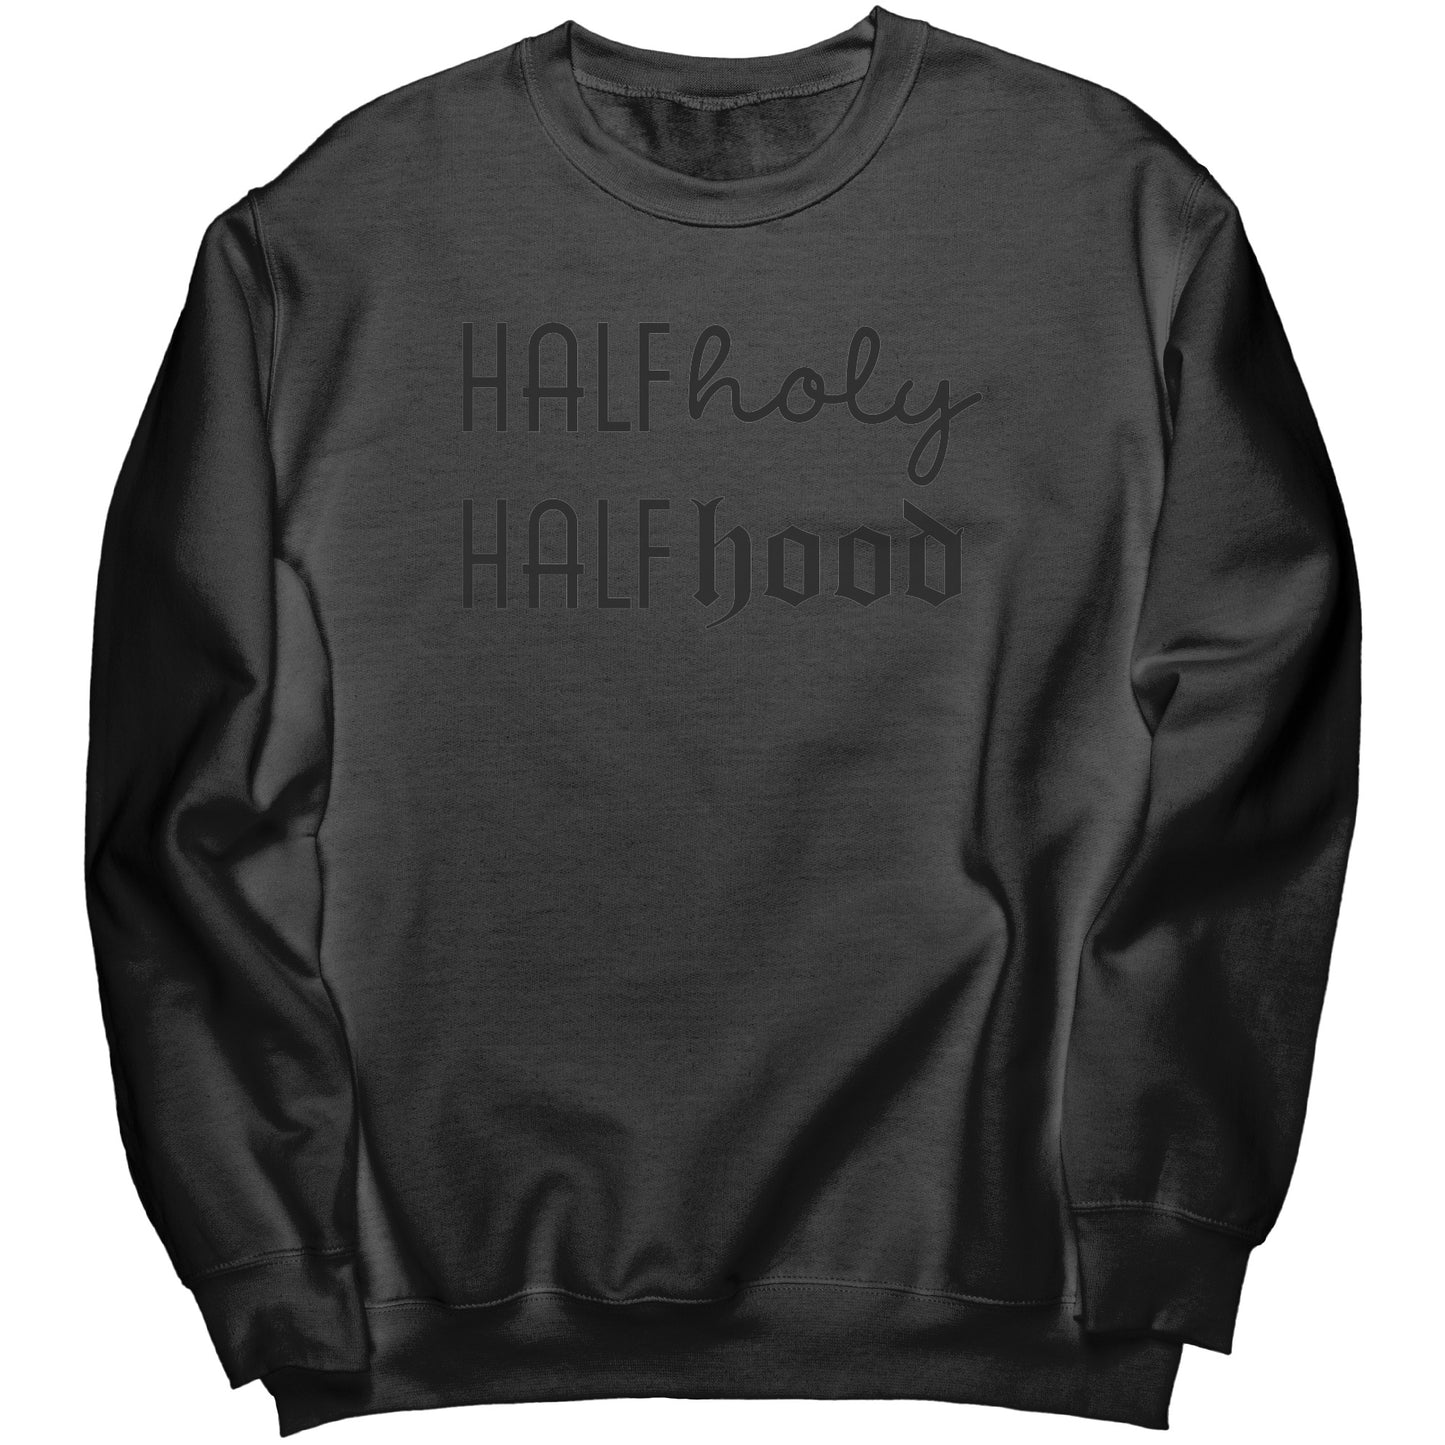 Holy Hood Crew Sweatshirt